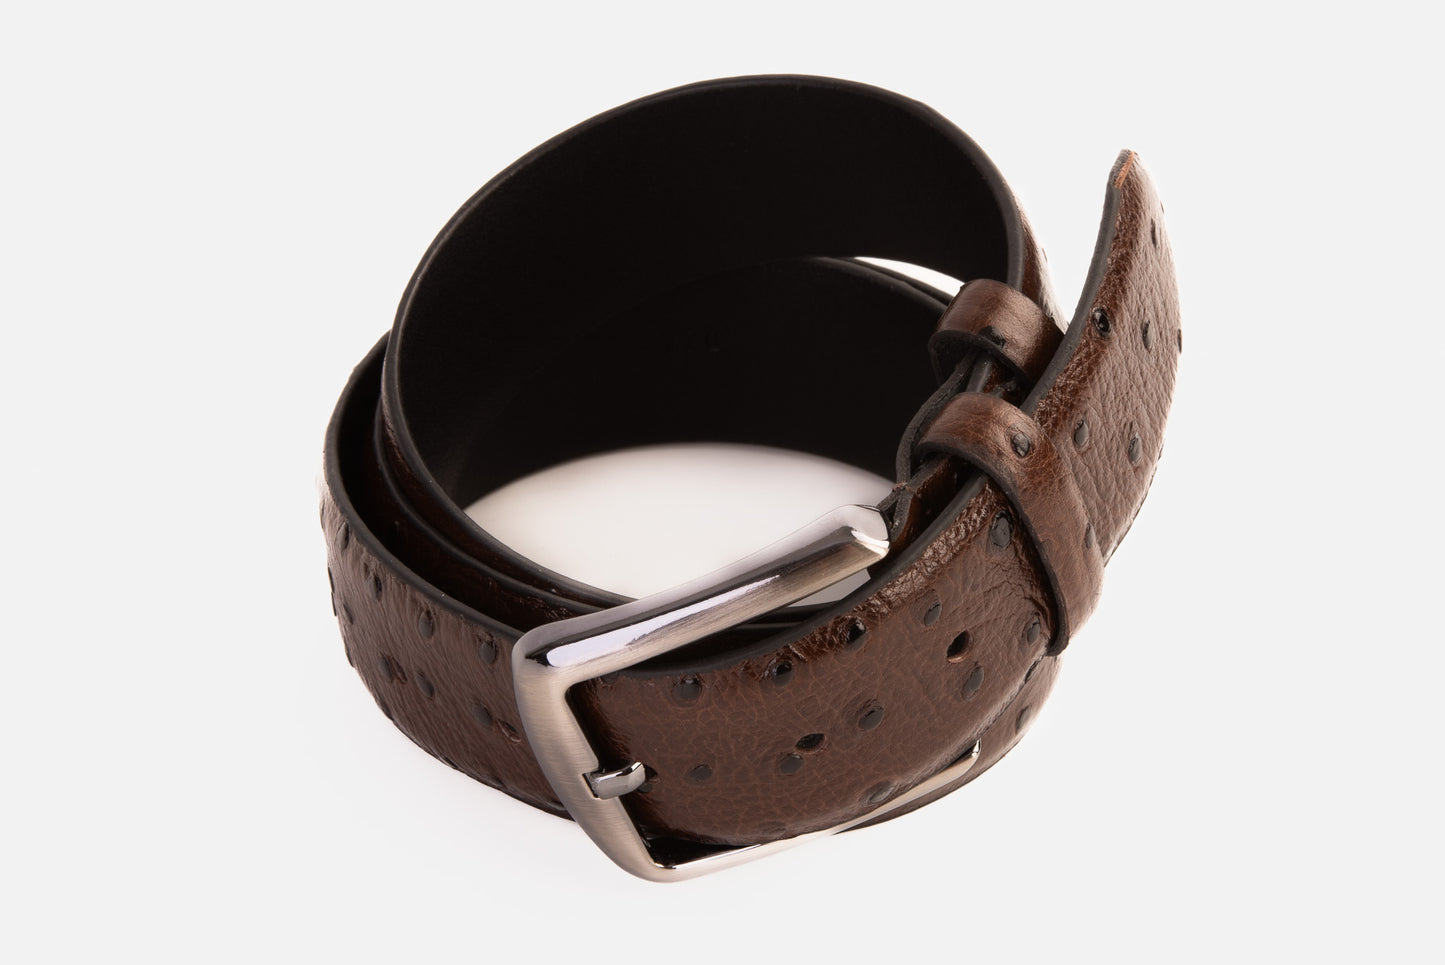 The Monterrey Brown Leather Belt